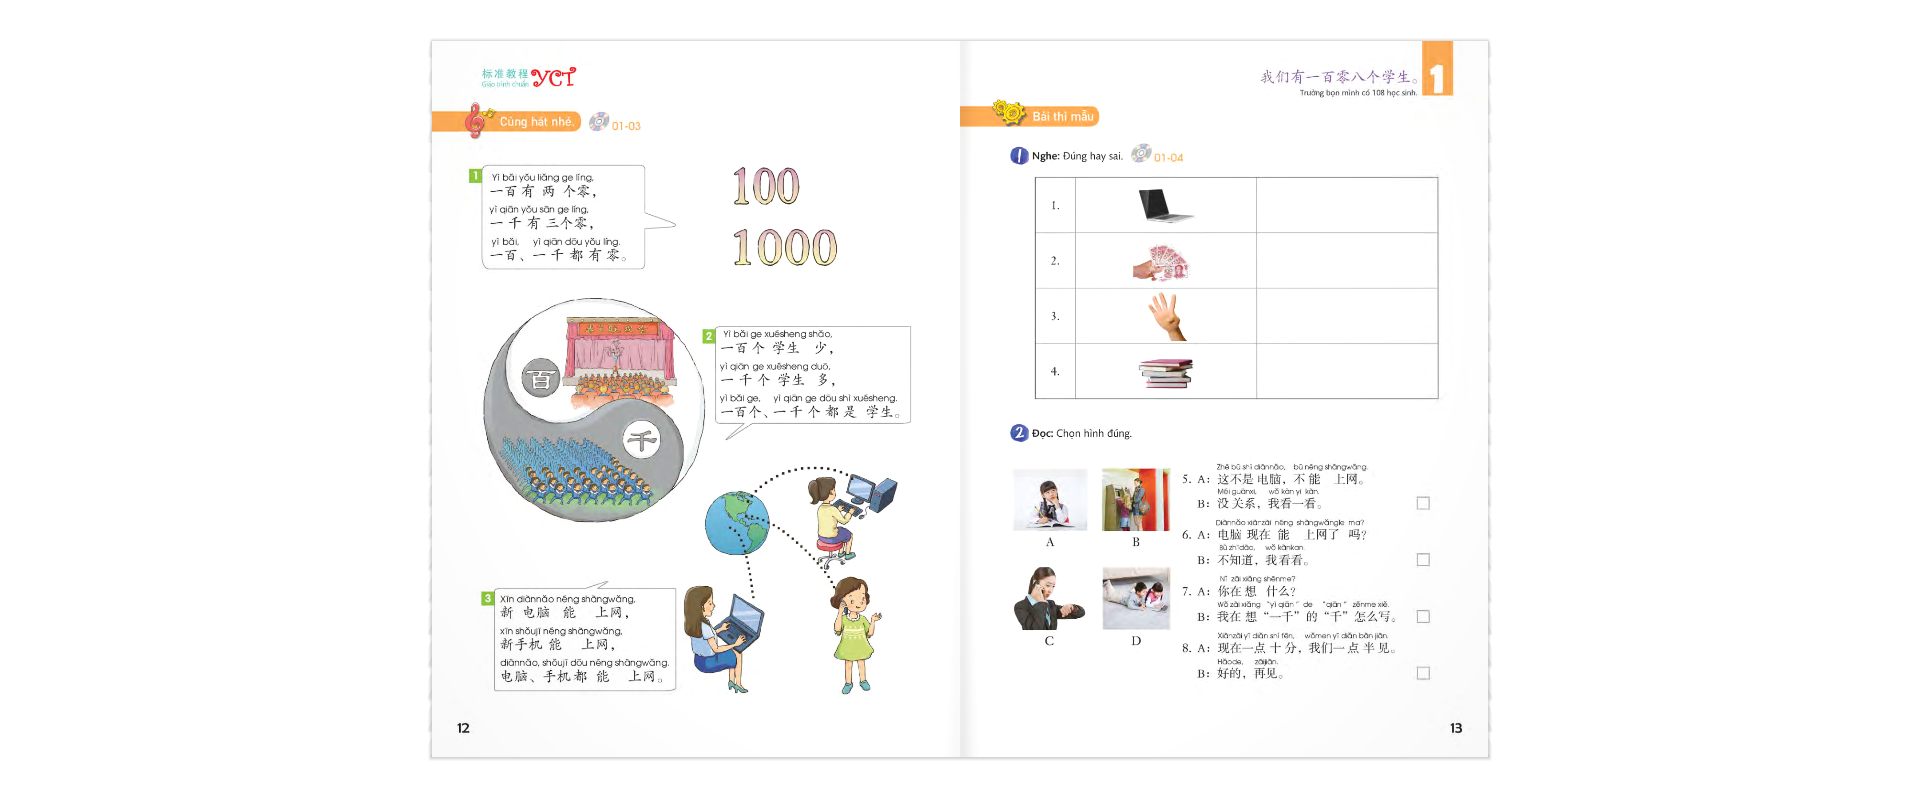 Giáo Trình Chuẩn YCT 4 CD PDF